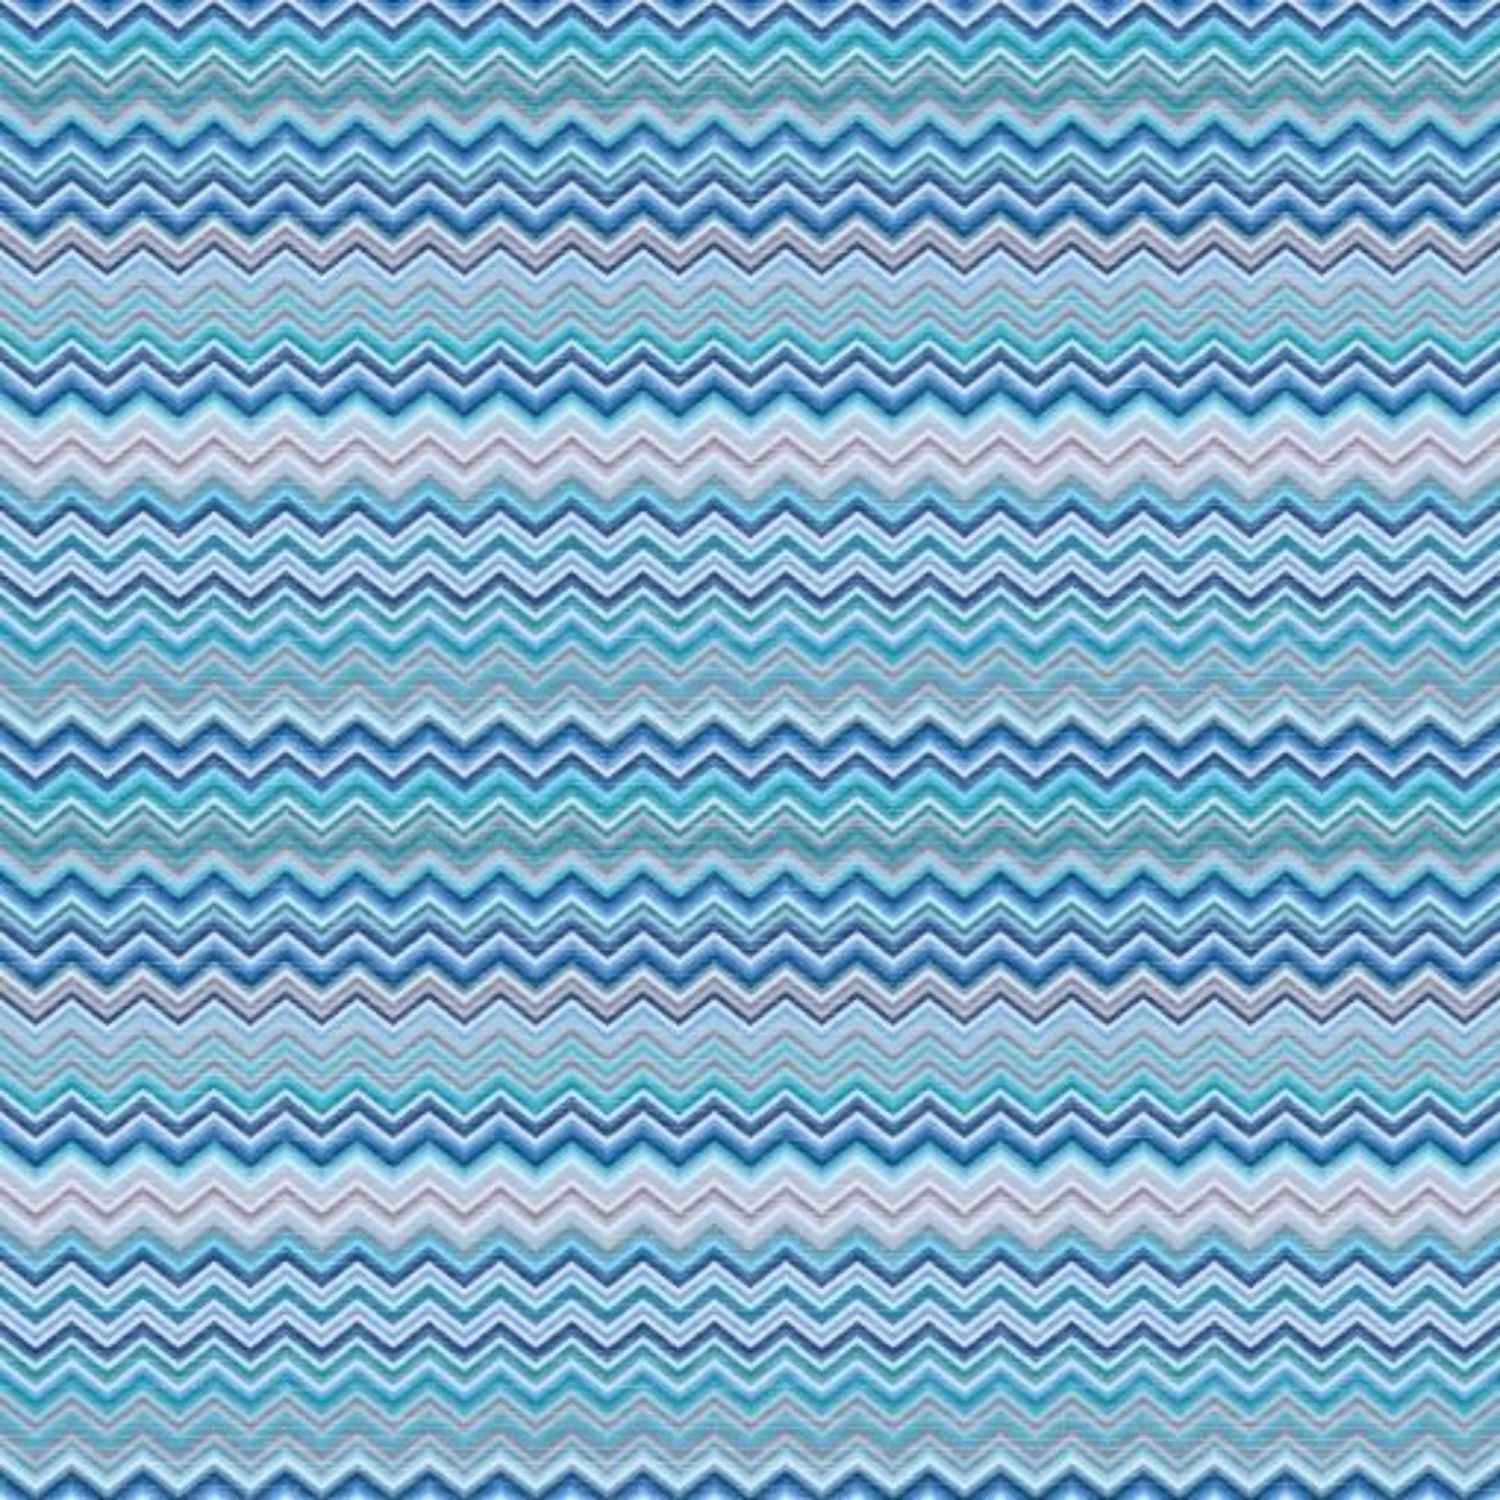 copritutto-telo-arredo-tuttofare-baia-azzurro-geometrico-azzurro-blu-grigio-acqua-zig-zag-chevron-pattern